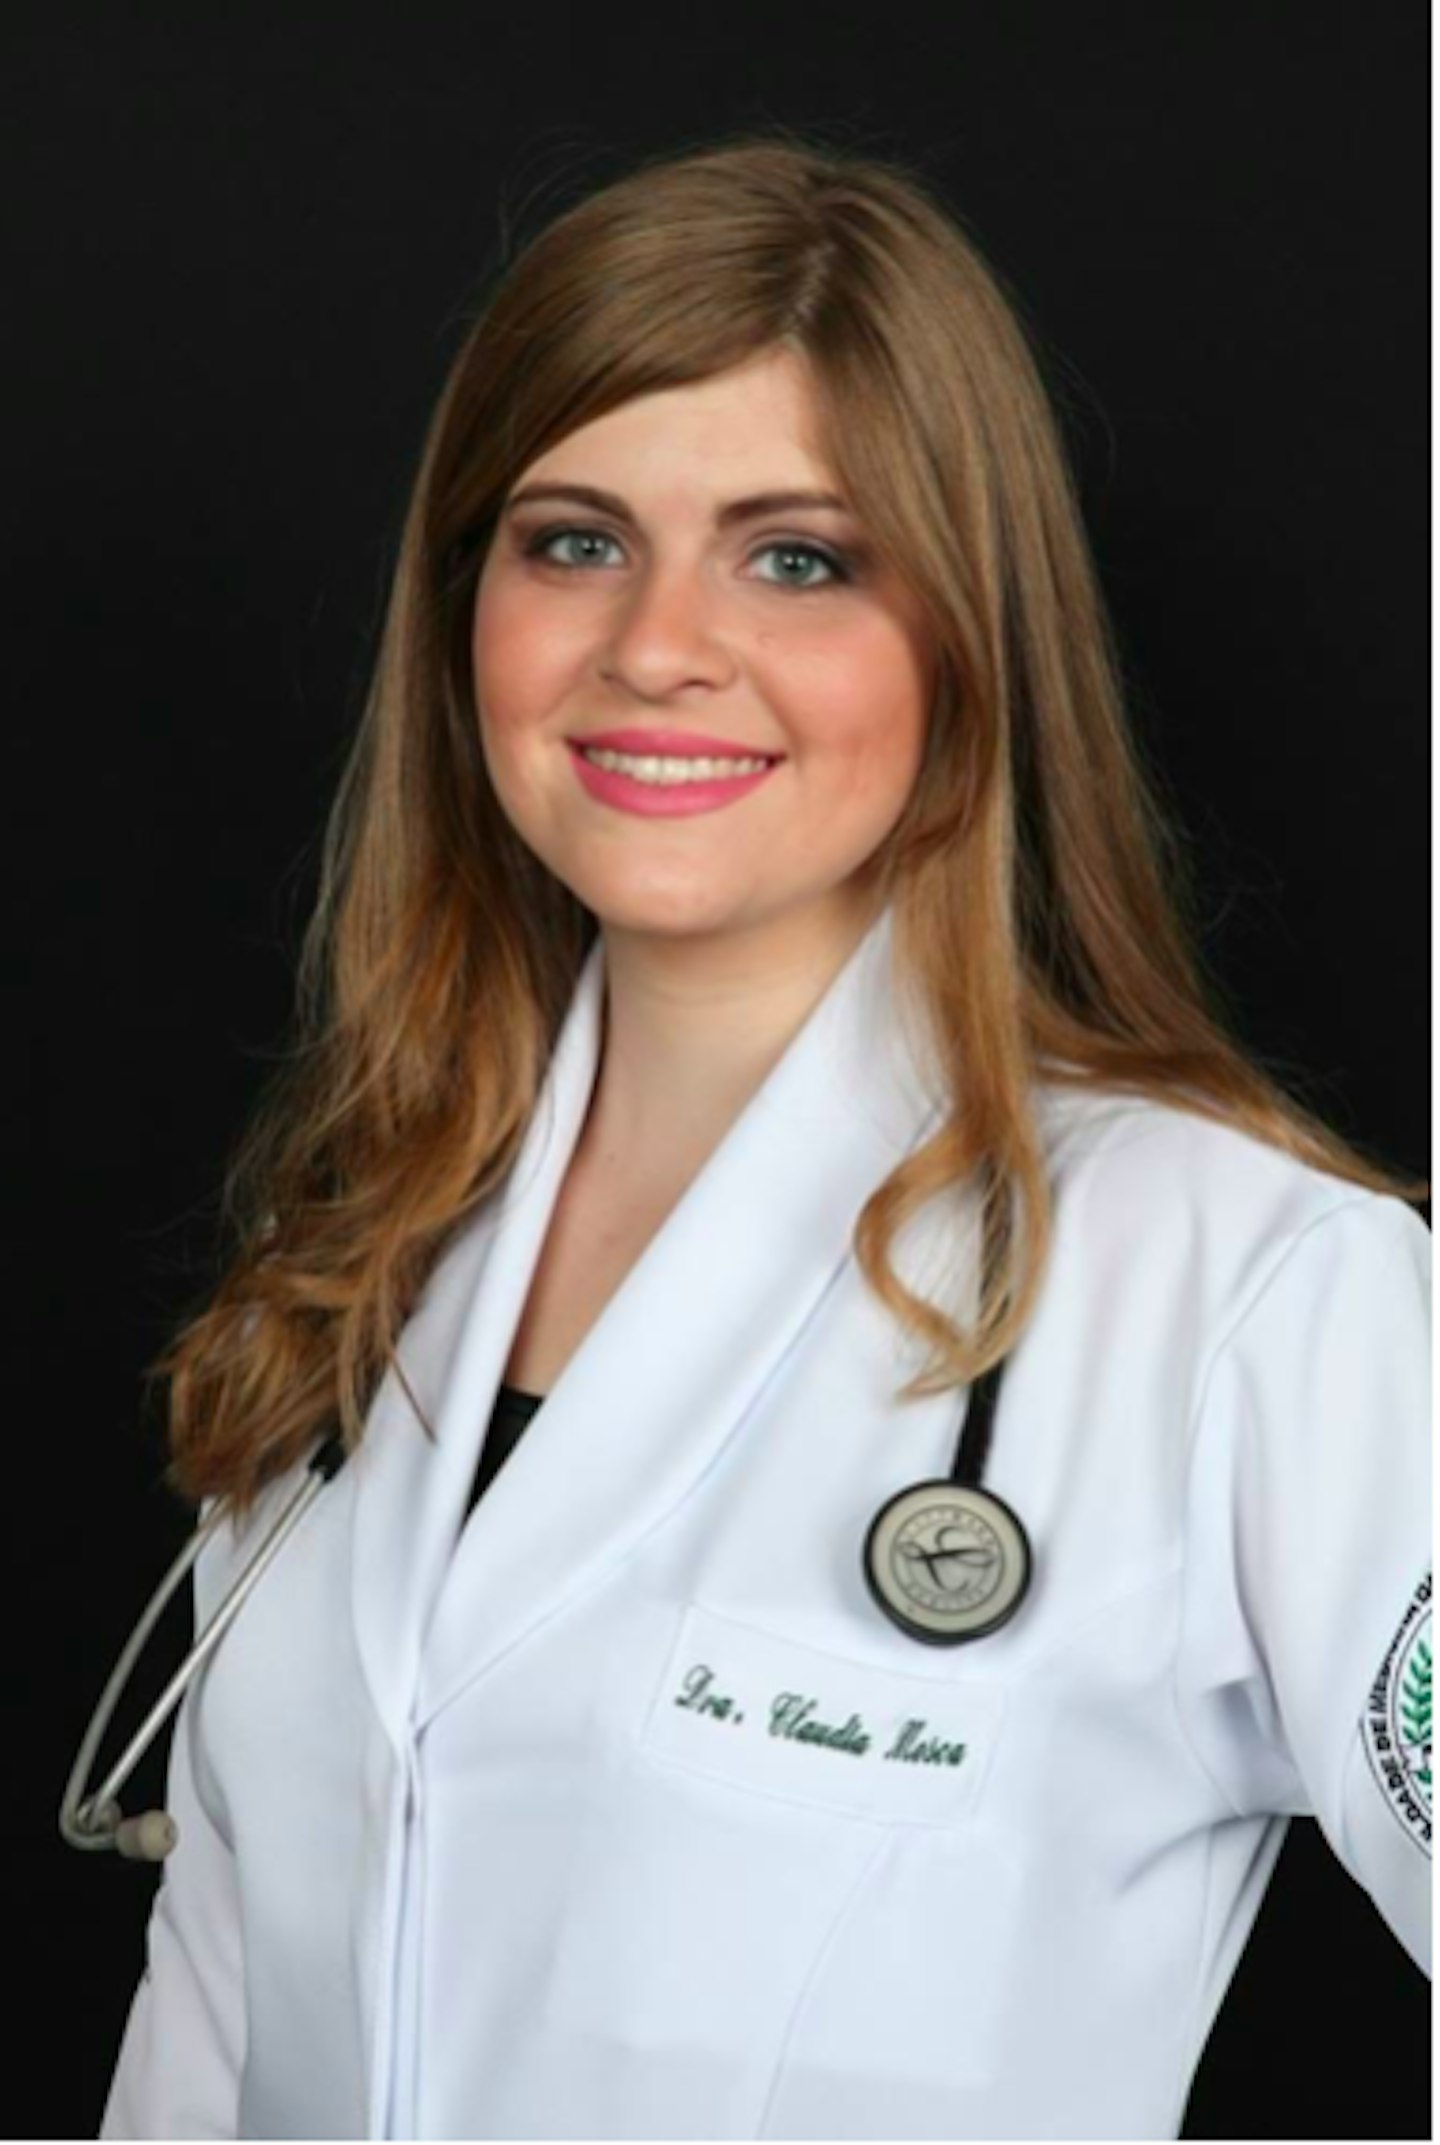 Dr. Claudia P. Mosca